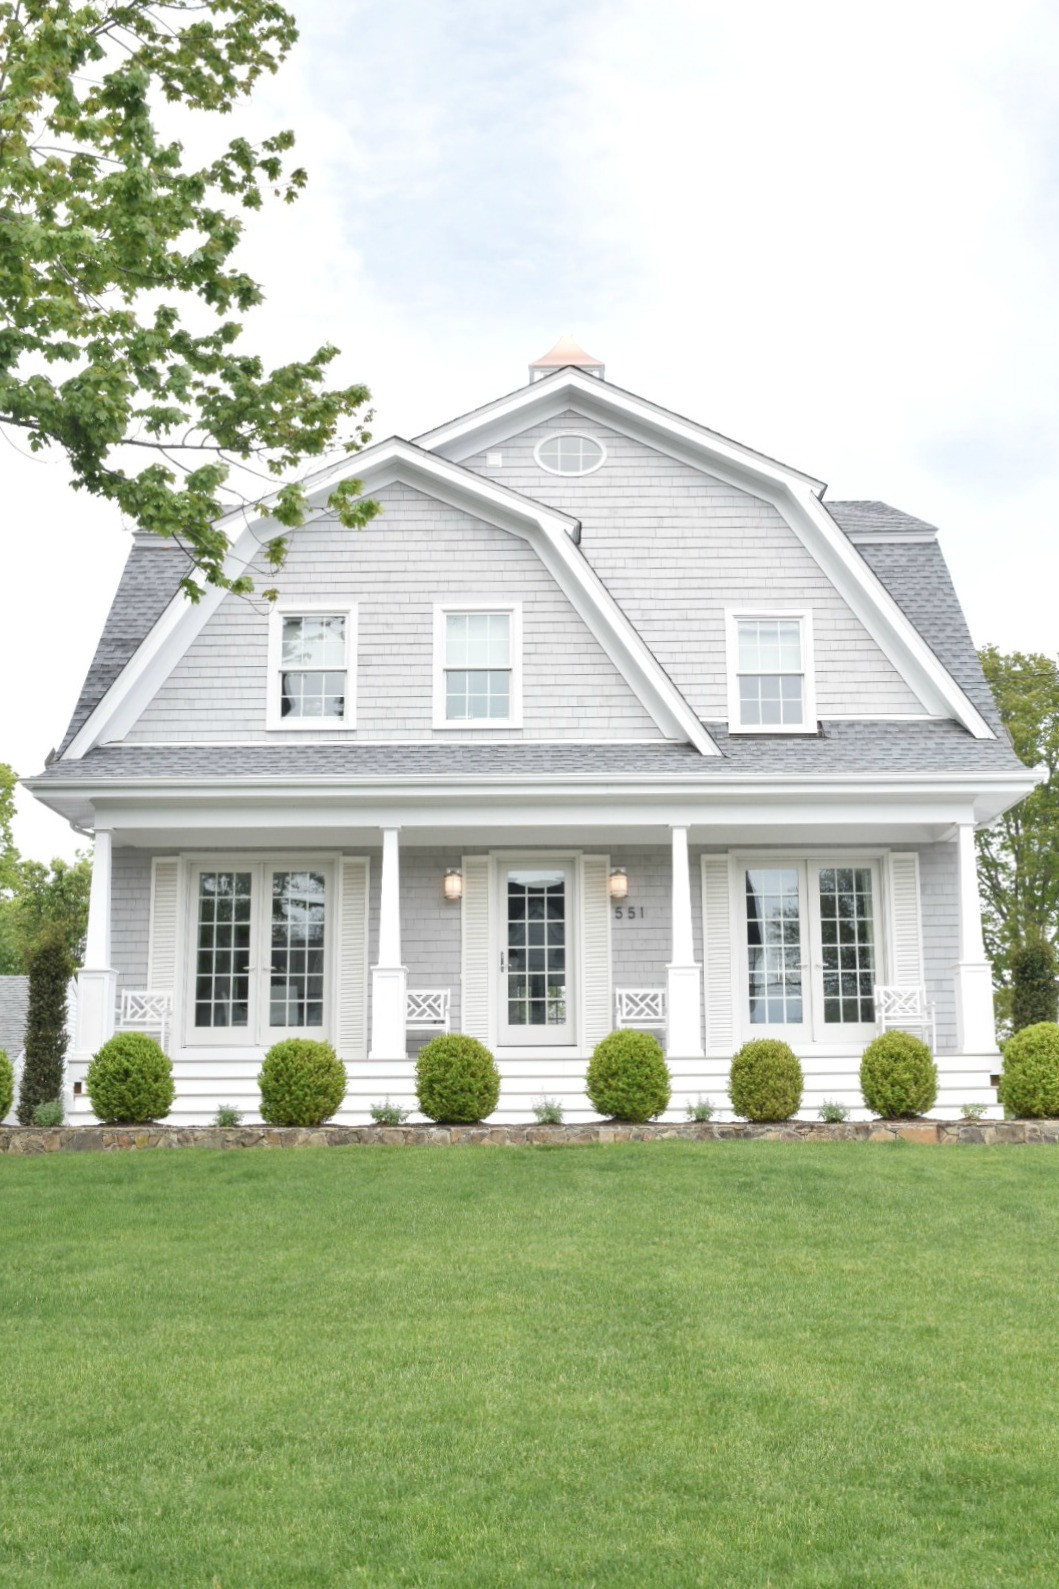 Best ideas about House Paint Colors Exterior
. Save or Pin New England Homes Exterior Paint Color Ideas Nesting Now.